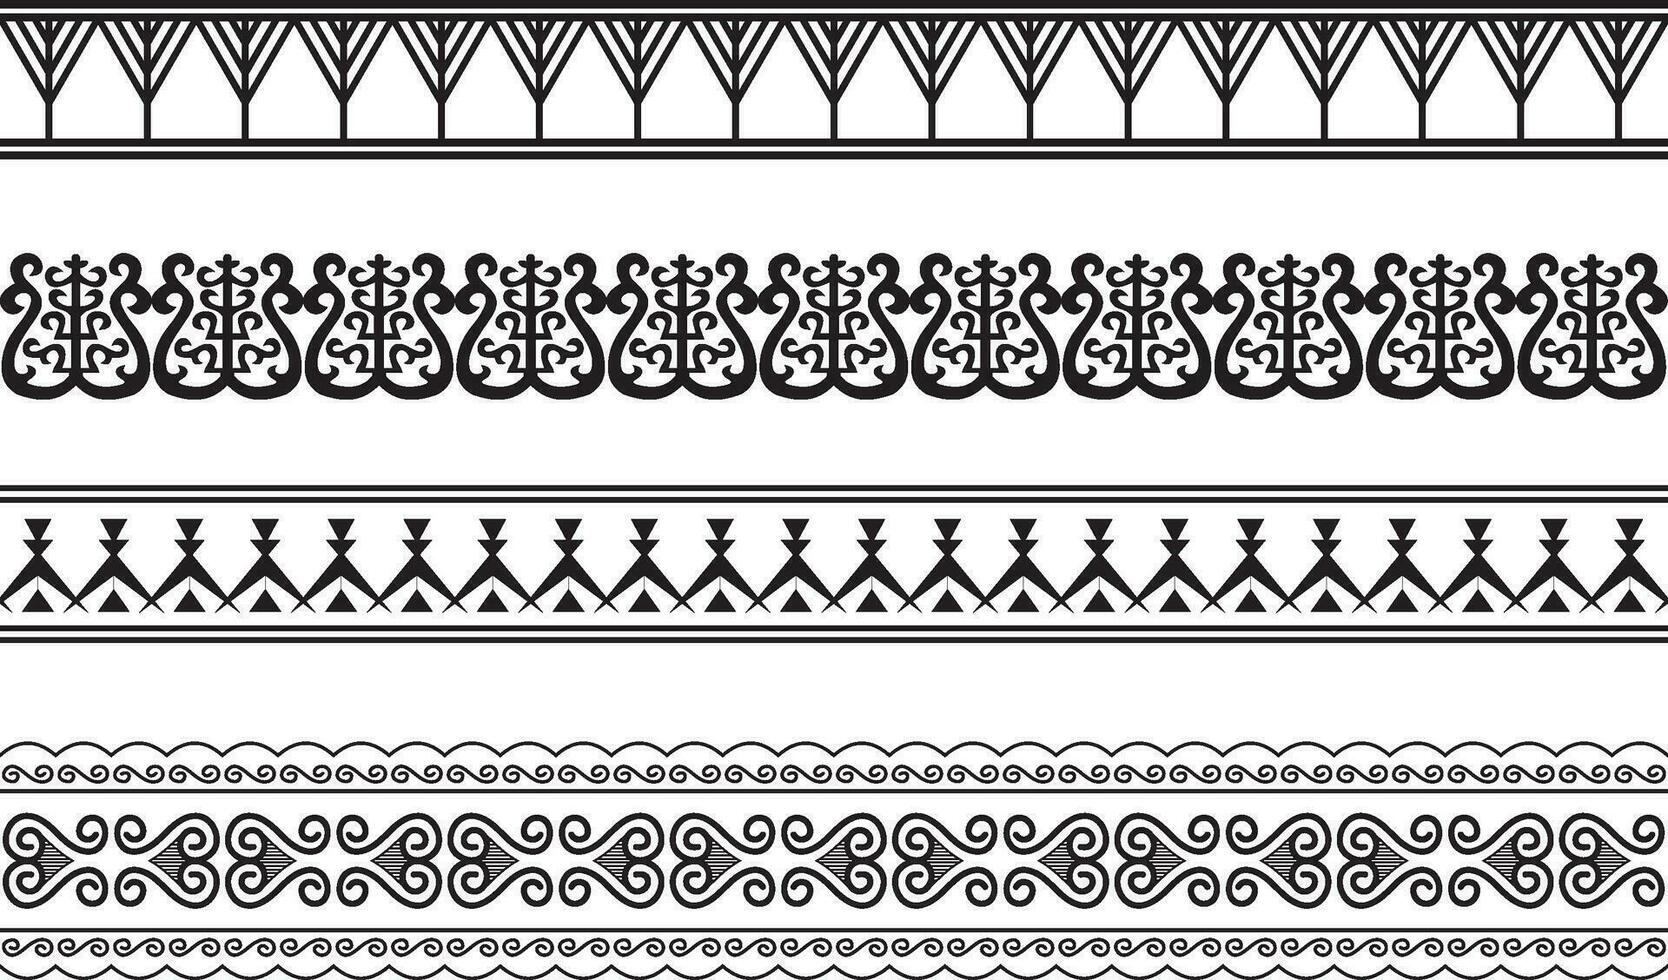 vektor uppsättning av sömlös yakut nationell ornament. svartvit ändlös asiatisk mönster, livstycken och ramar. Hem dekorationer, mattor och keramik. traditioner av nordlig människors, människor av de tundra